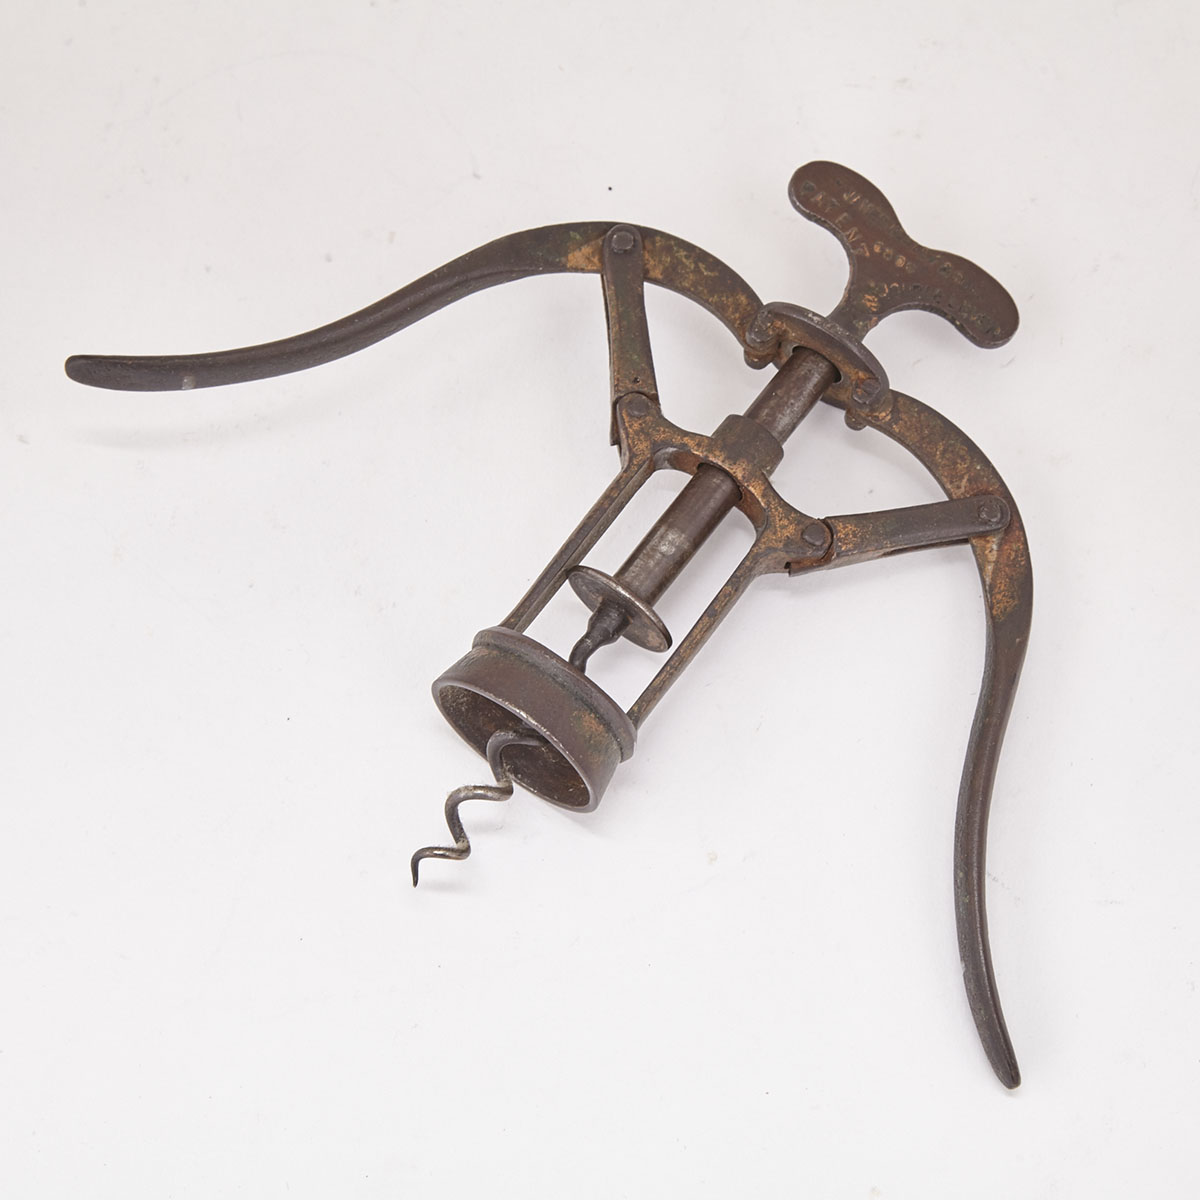 James Heeley & Sons Patent No. 6006 Double Lever Gilt Cast Iron Corkscrew, c.1888